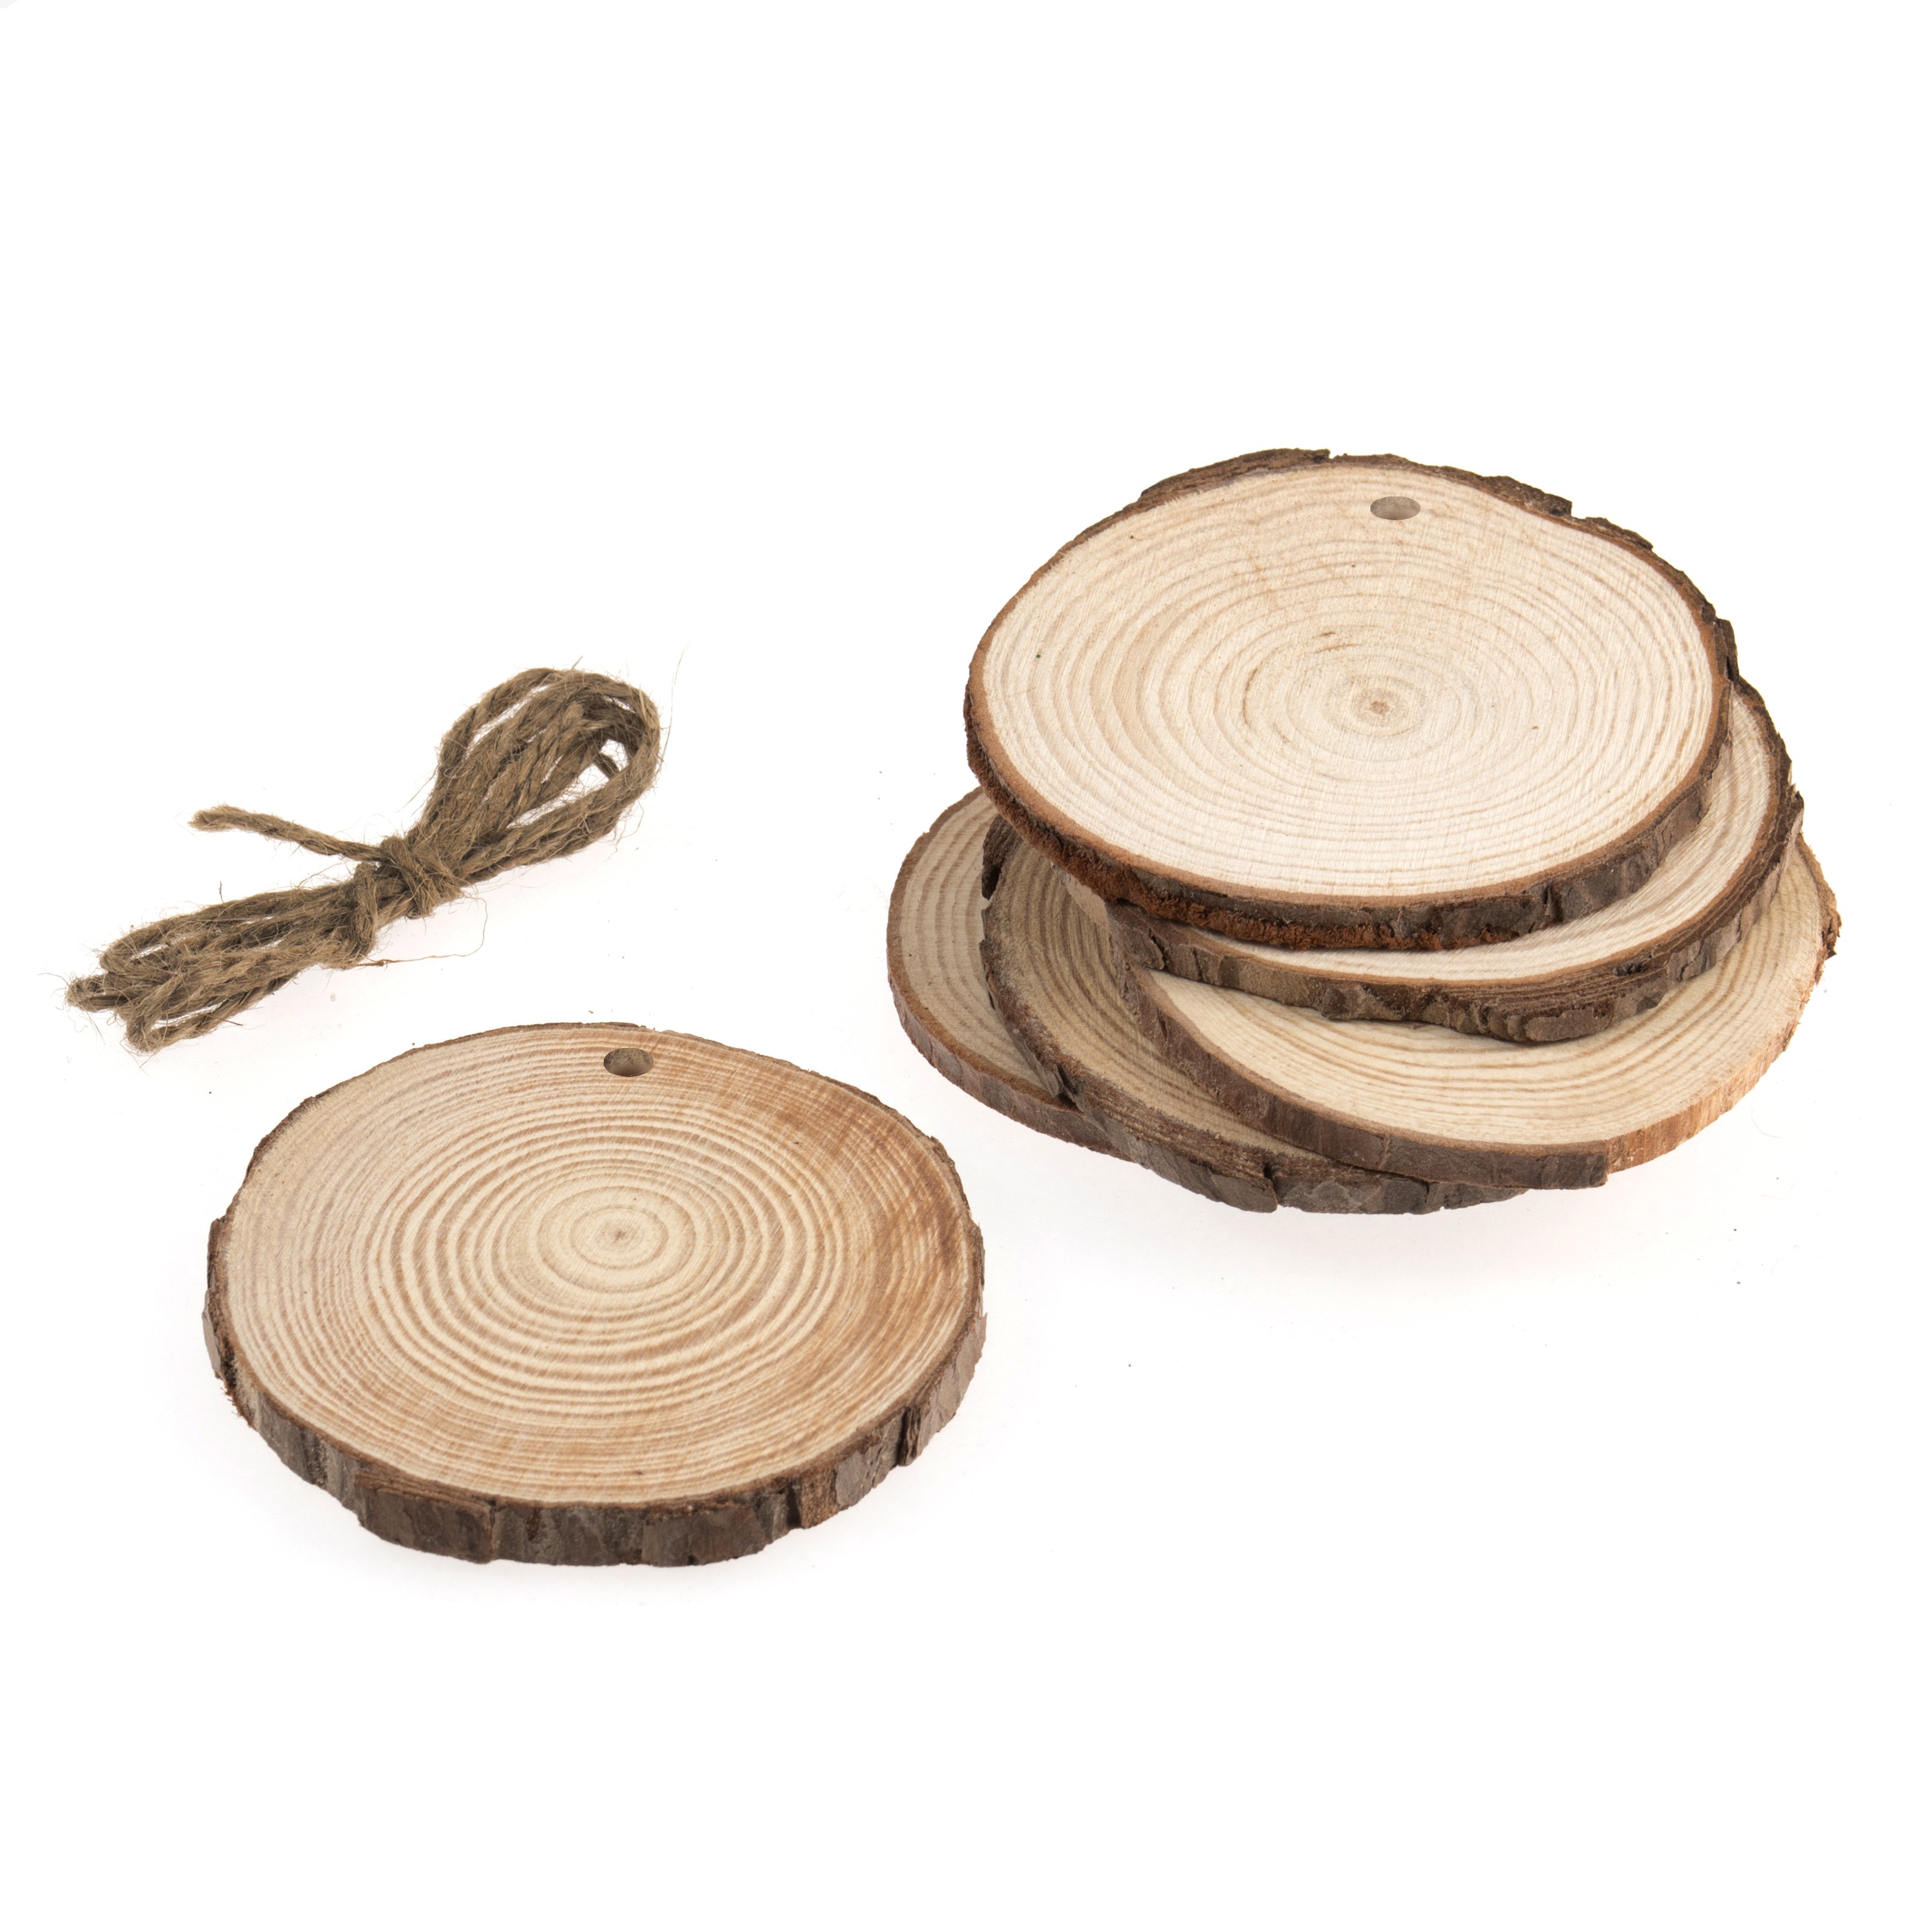 Wooden Round Slices: 6 Pieces